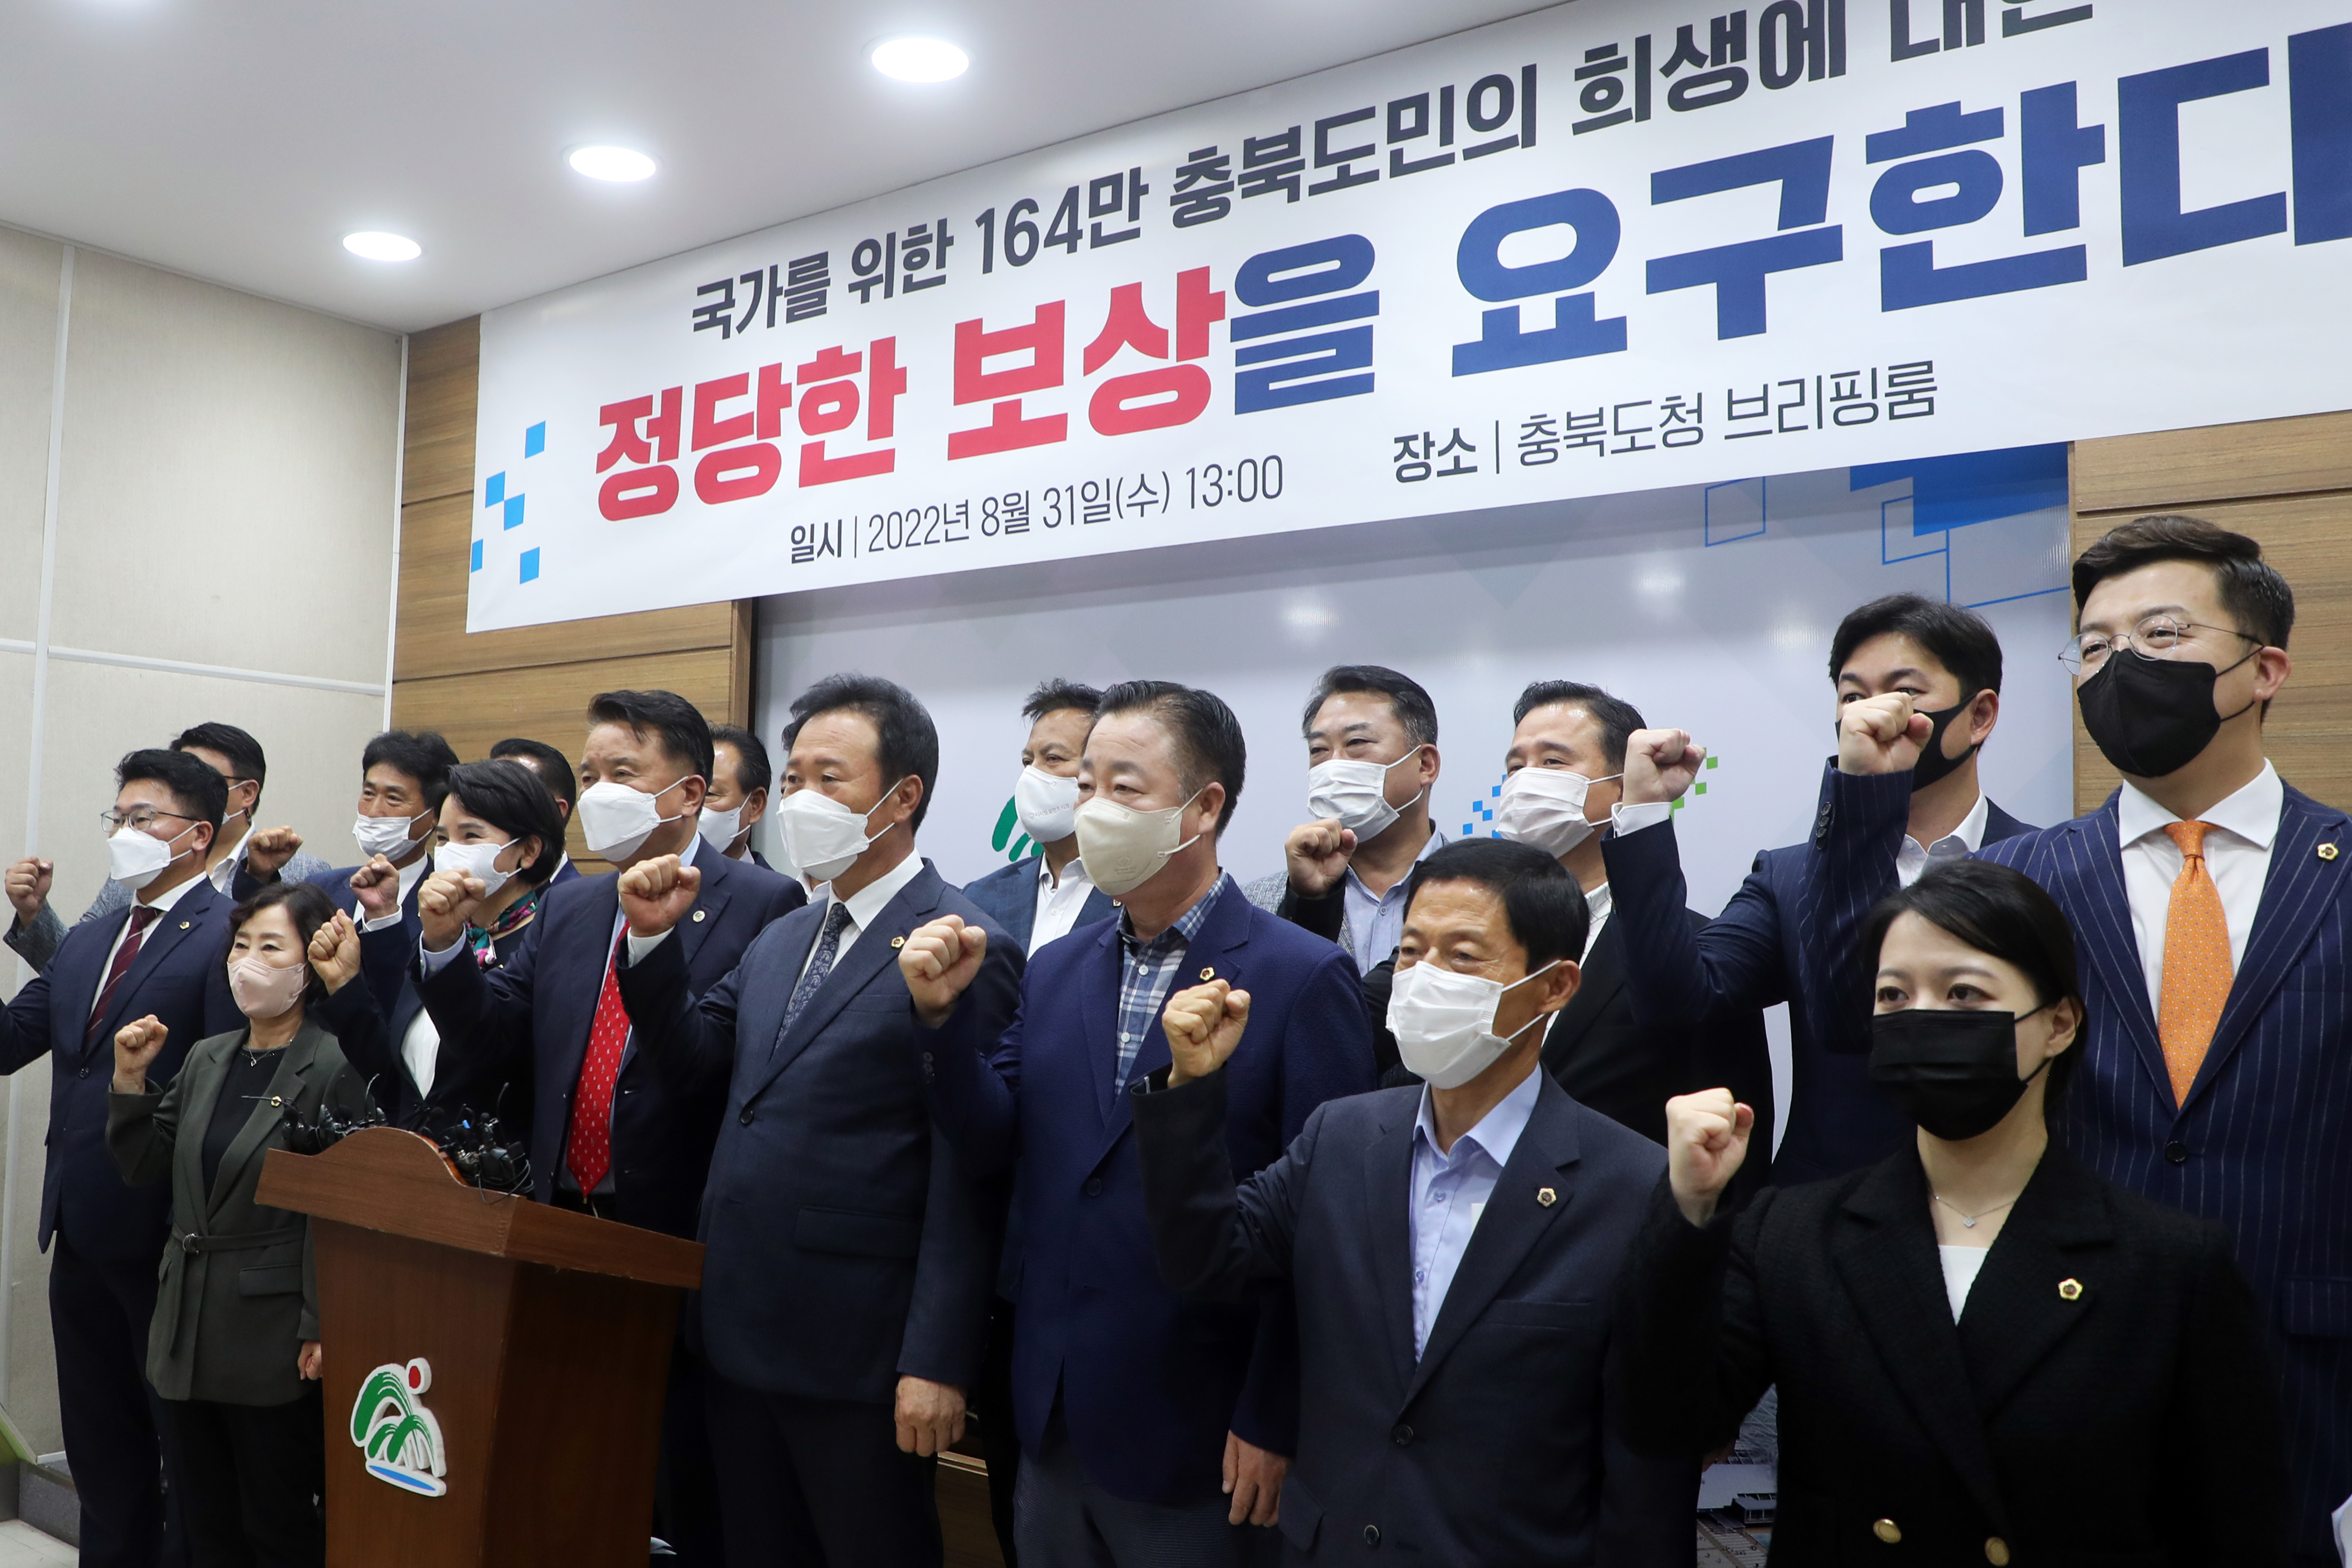 20220831 - 충북도민의 염원을 담은 대정부 성명서 관련 기자 브리핑